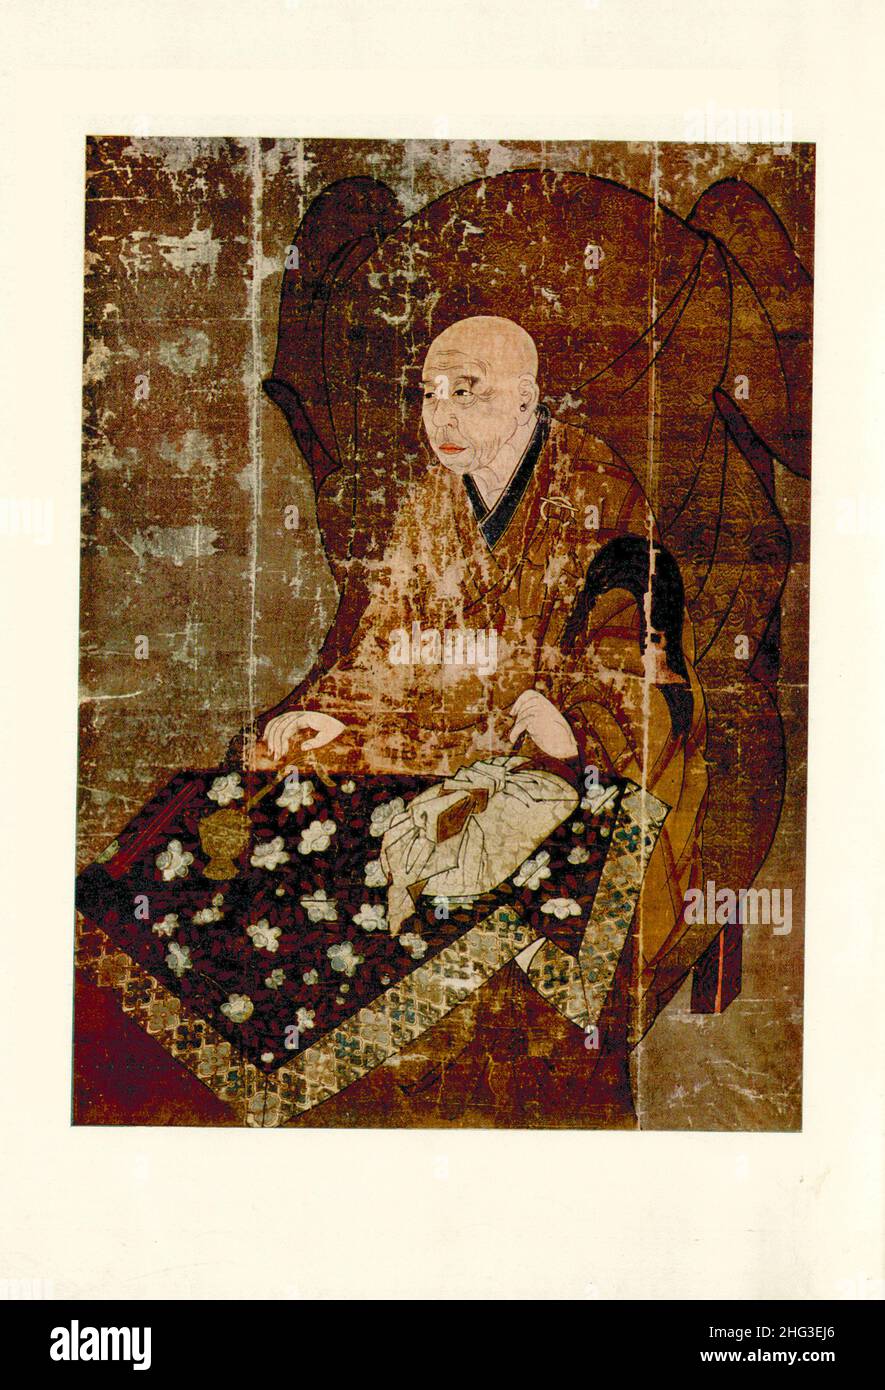 Peinture médiévale chinoise : portrait d'Un prêtre.Dynastie Qing, Chine.Reproduction de l'illustration du livre de 1912. Banque D'Images